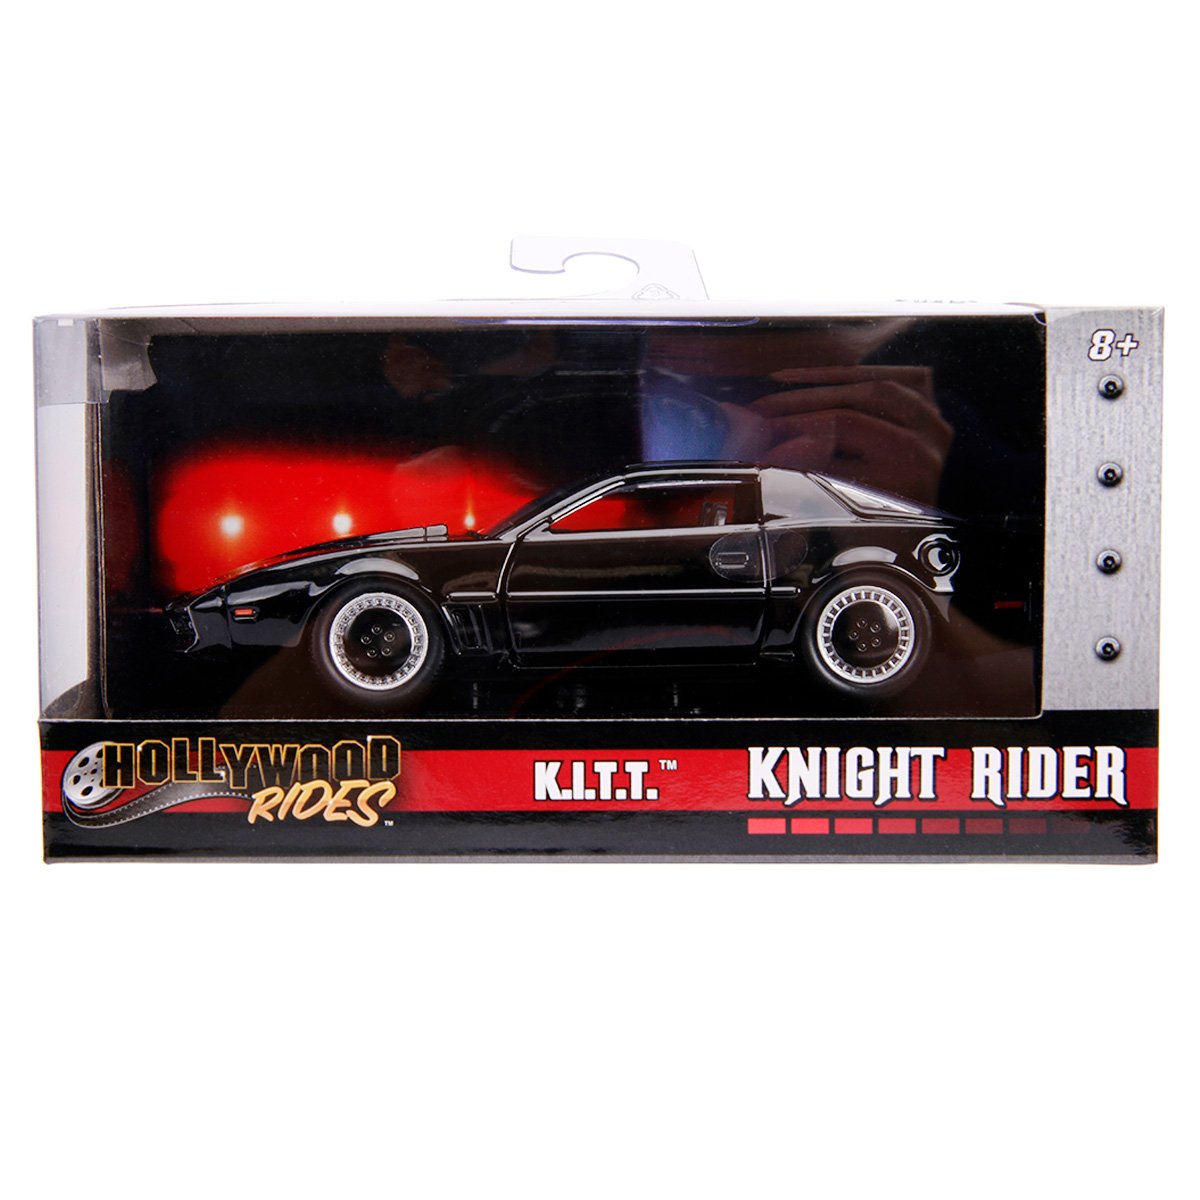 Masina din metal, Jada, Hollywood Rides, Knight Rider Kitt, 1:32 1:32 imagine 2022